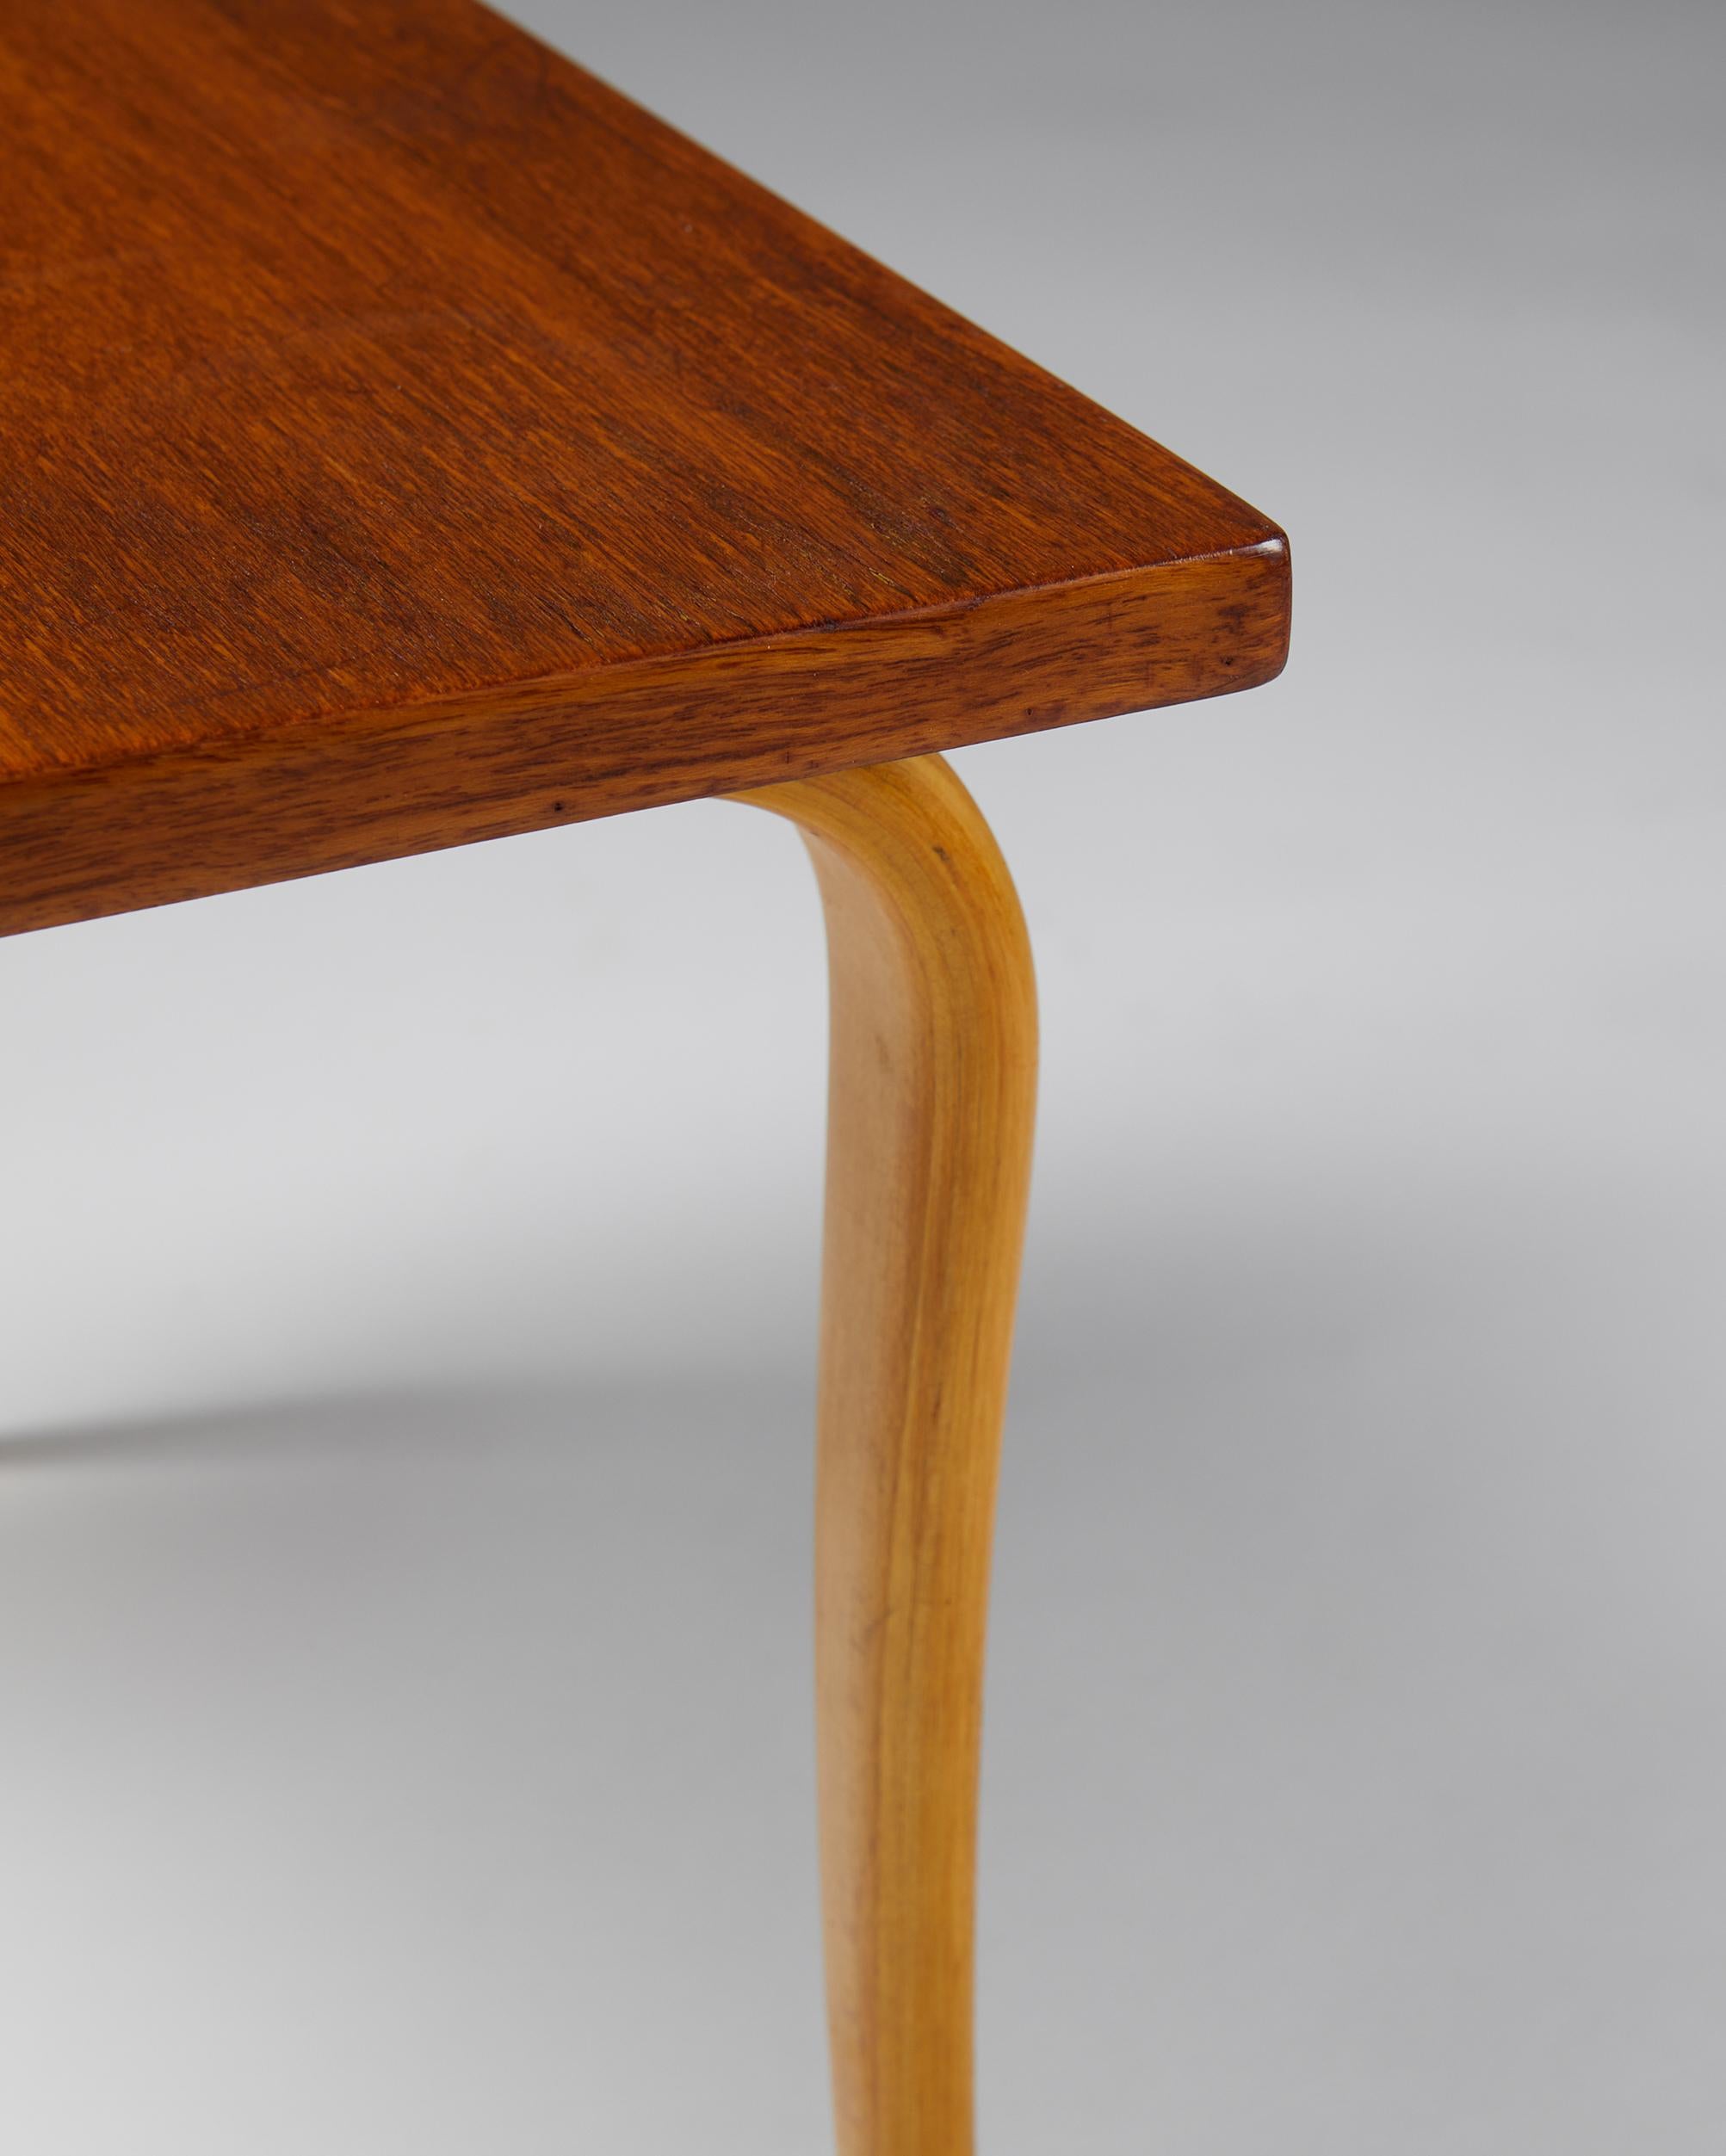 Birch Table “Annika” Designed by Bruno Mathsson for Karl Mathsson, Sweden, 1950’s